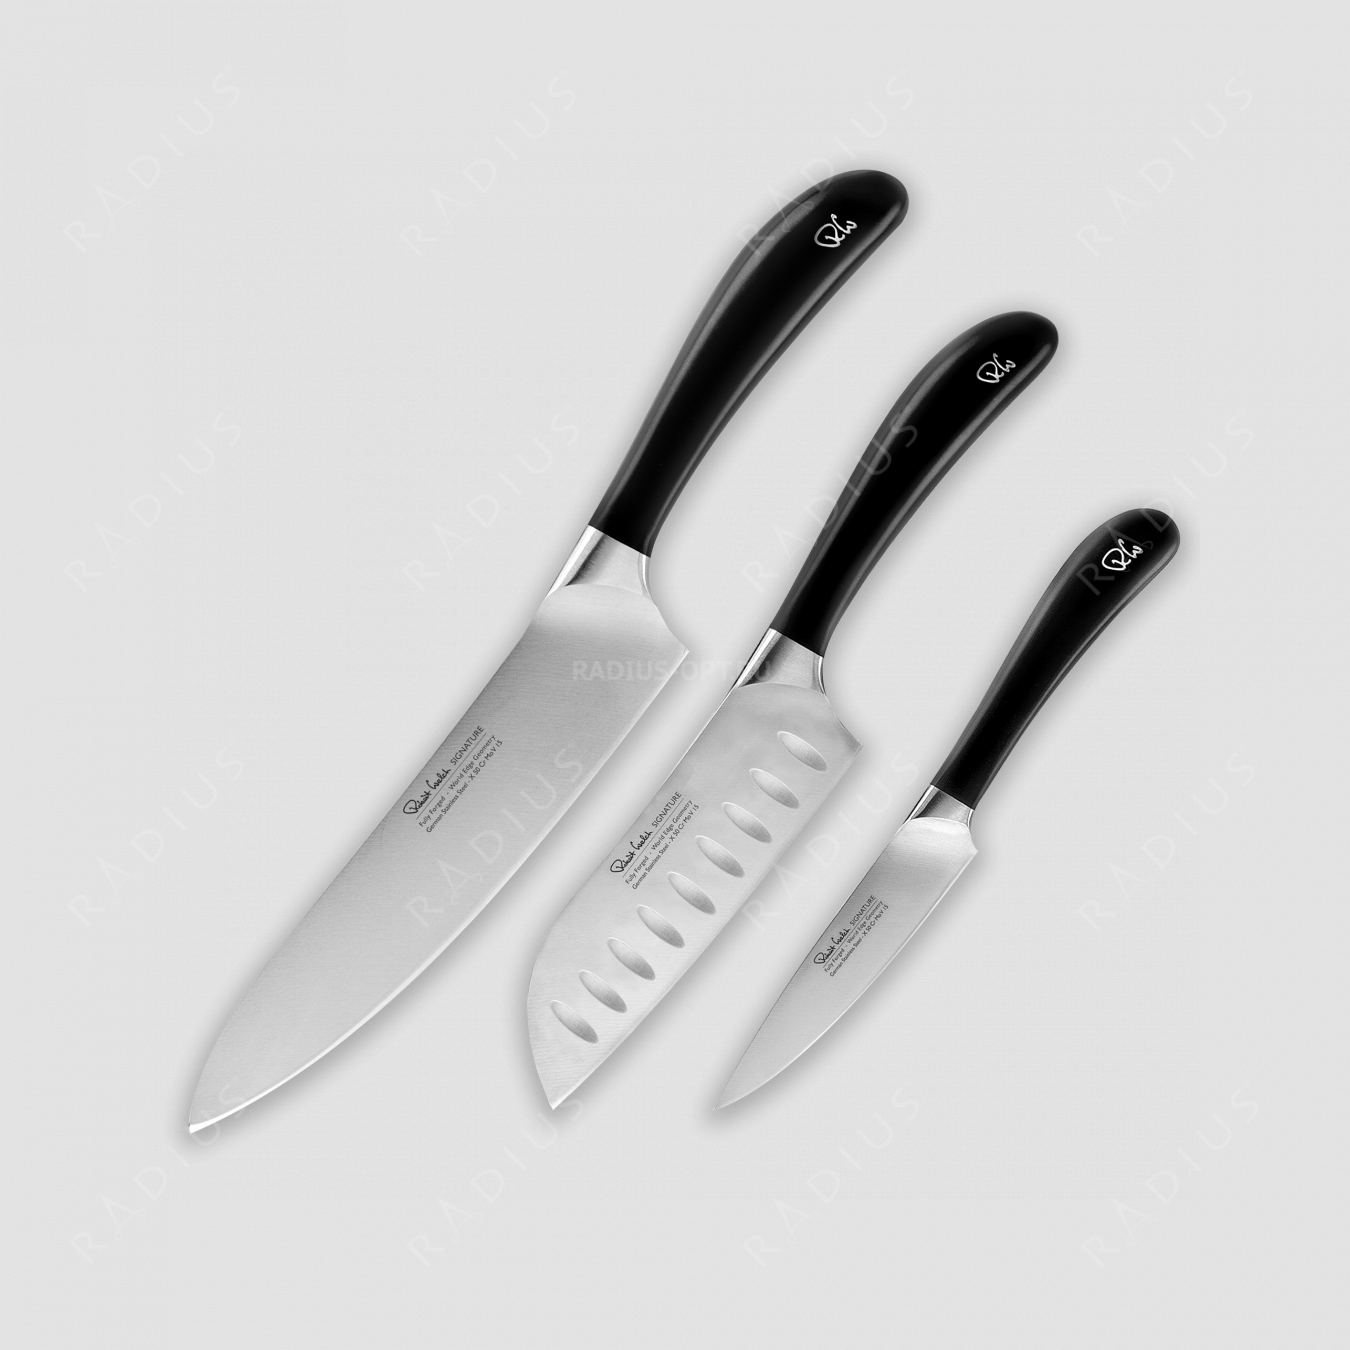 Набор из 3-х кухонных ножей, SIGNATURE, серия Promotion, ROBERT WELCH, Великобритания